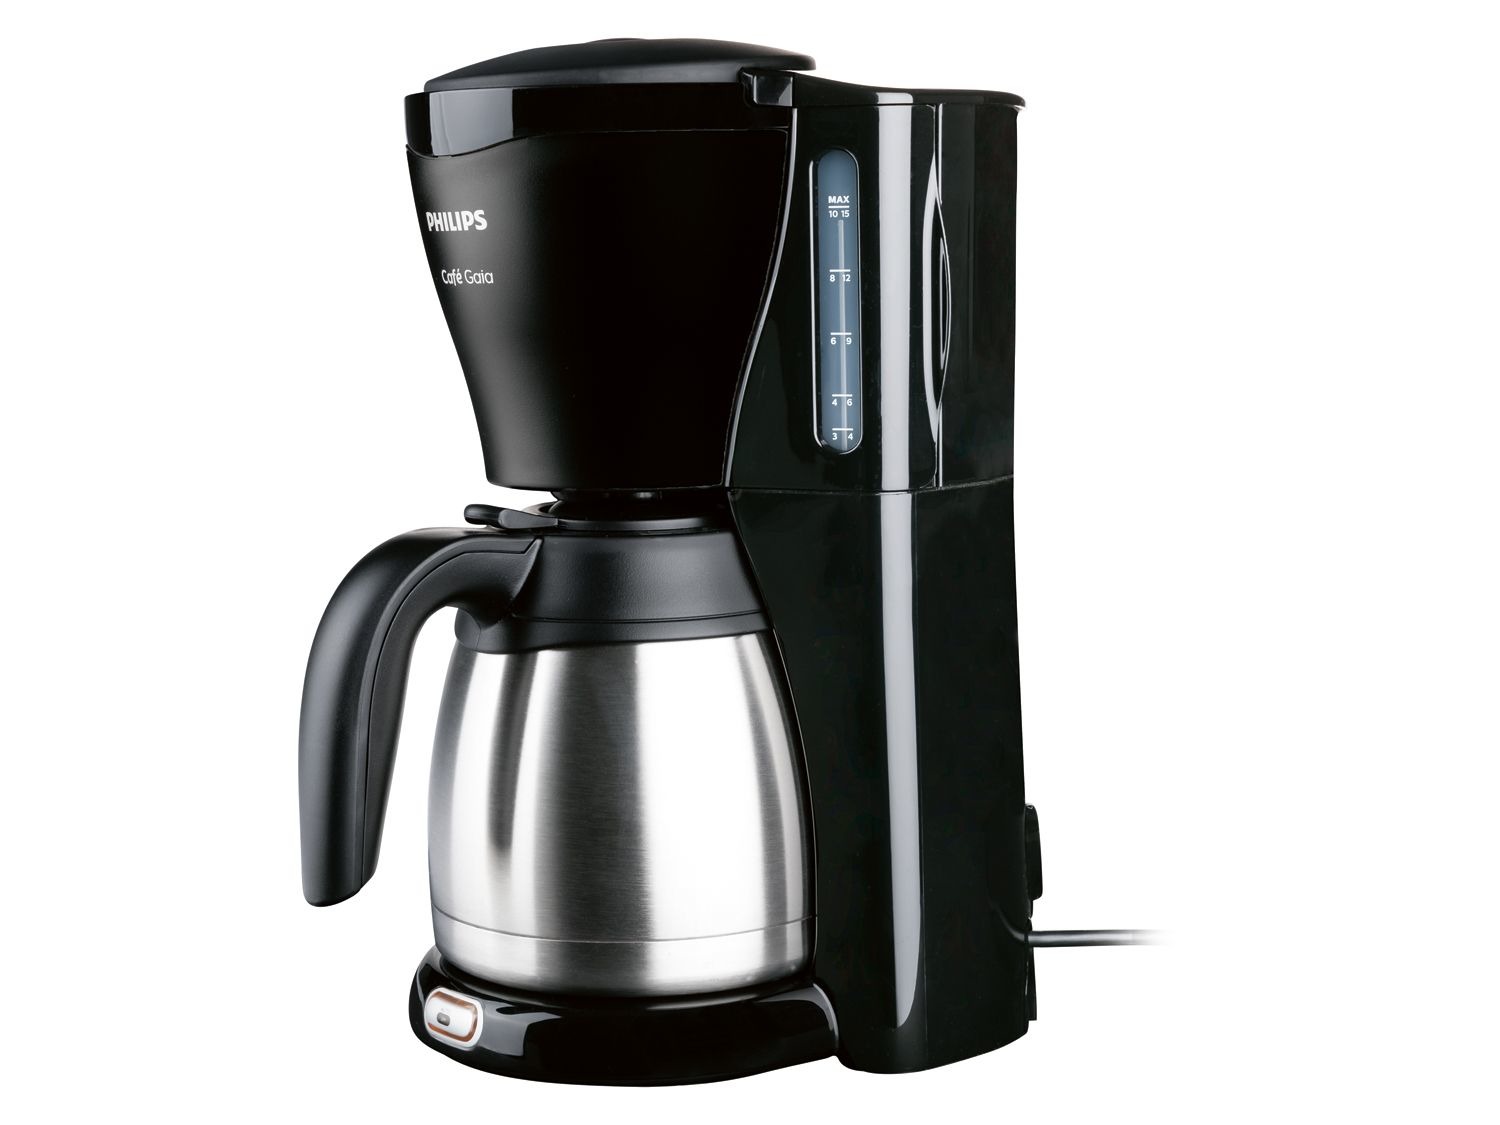 Afscheid nakoming gewicht PHILIPS Koffiezetapparaat Café Gaia HD7544/20, 1000 W,…